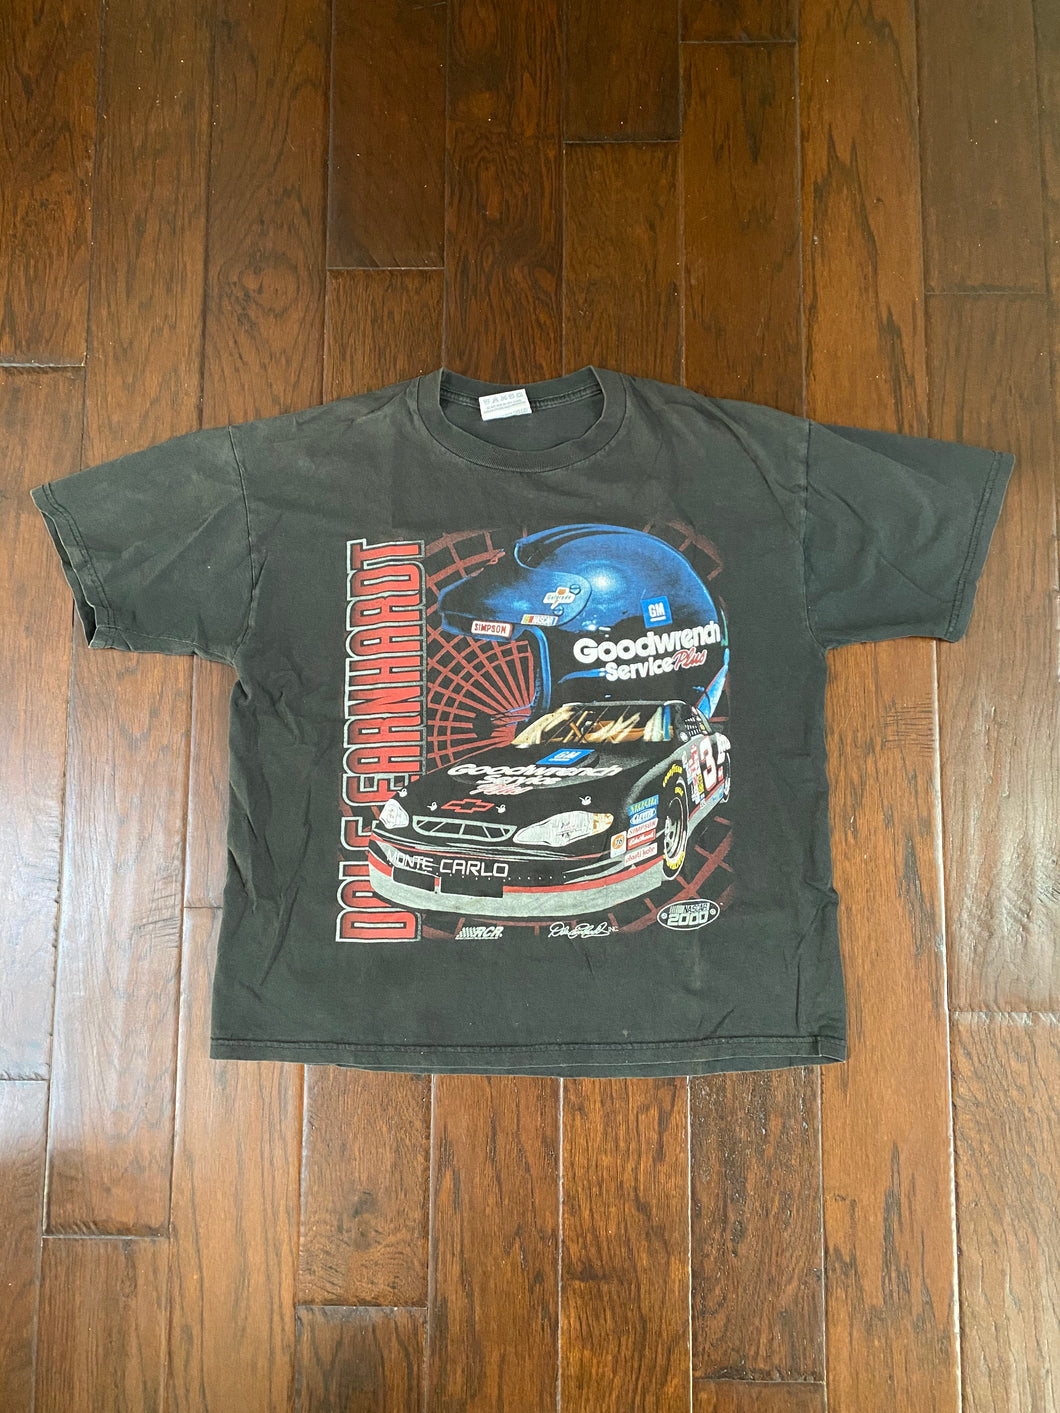 Dale Earnhardt #3 NASCAR 2000 Vintage Distressed T-shirt